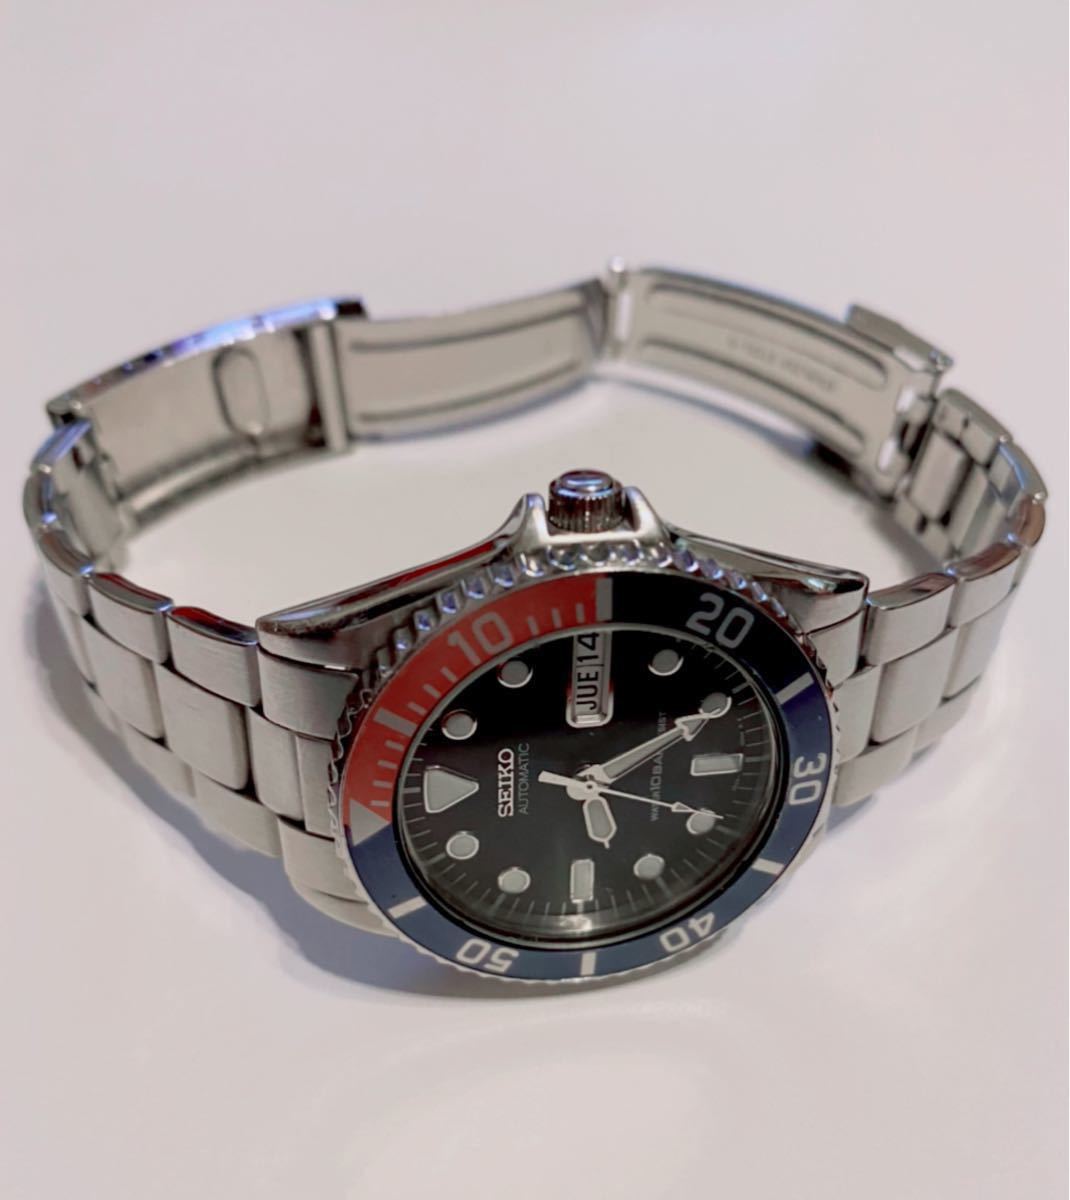 SEIKO セイコー メンズ腕時計 自動巻き 7S26-0050 海外向けモデル